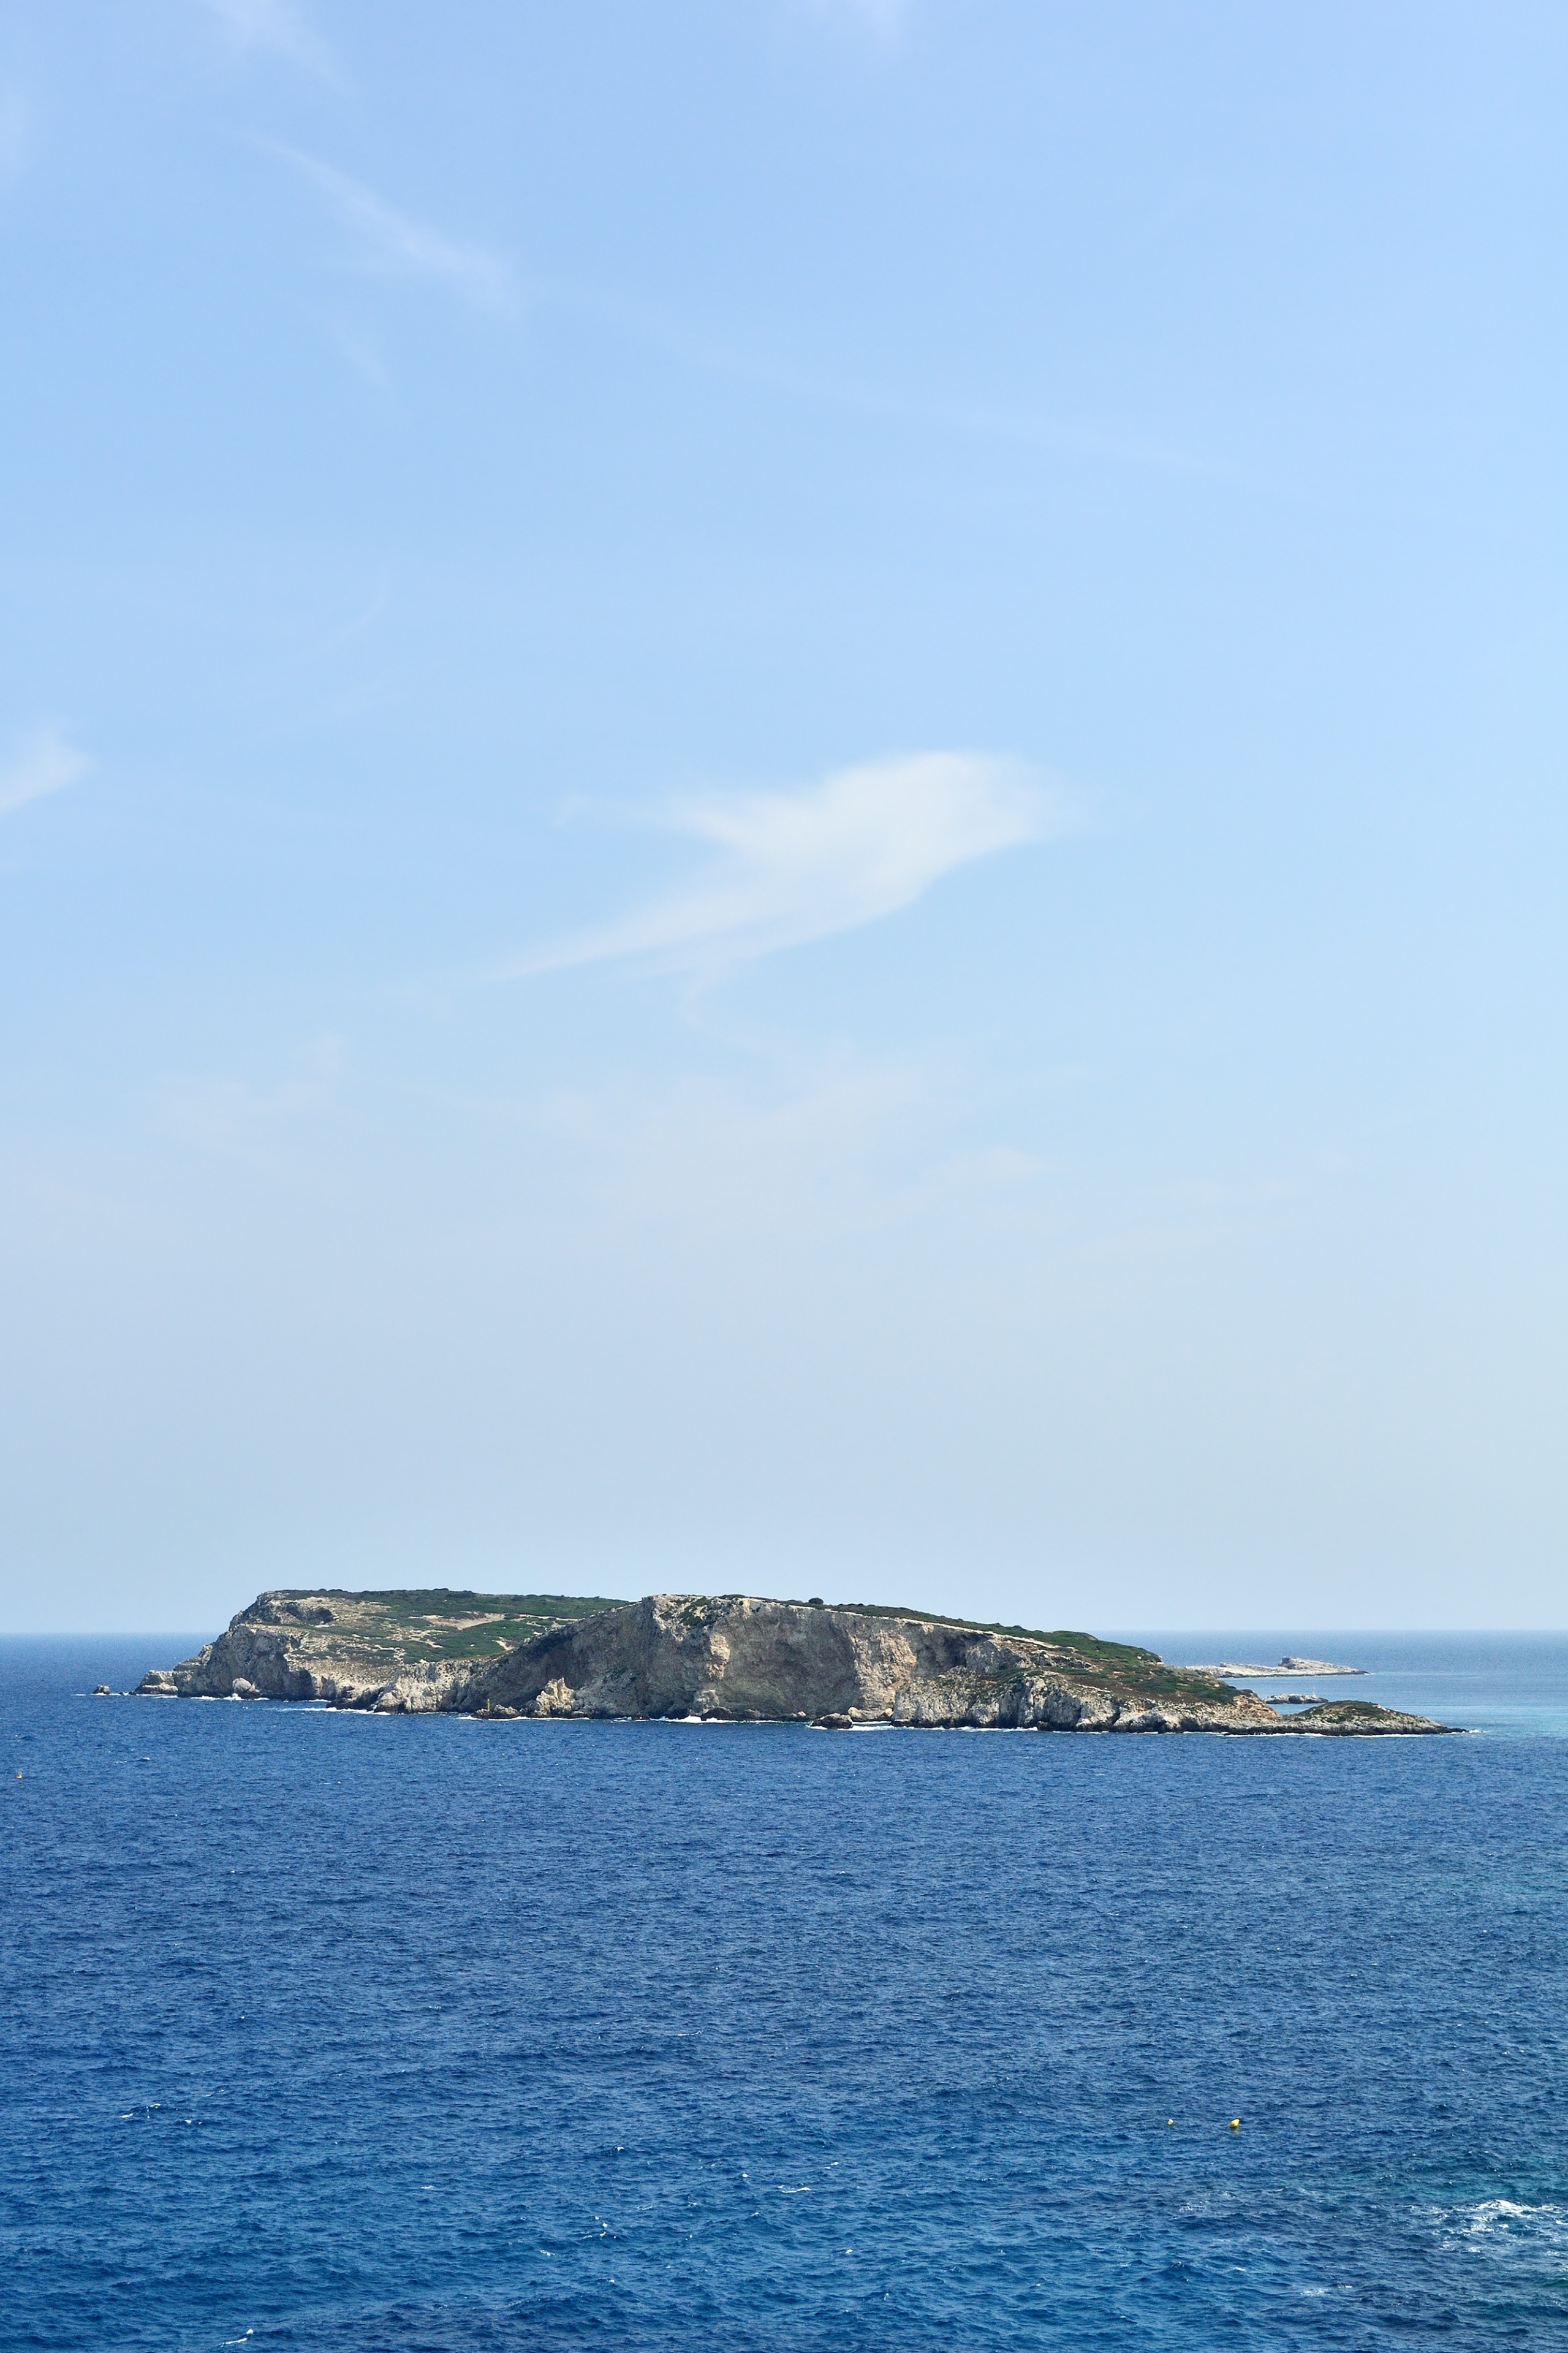 Cretaccio Island from San Domino Island, Tremiti, Foggia, Italy